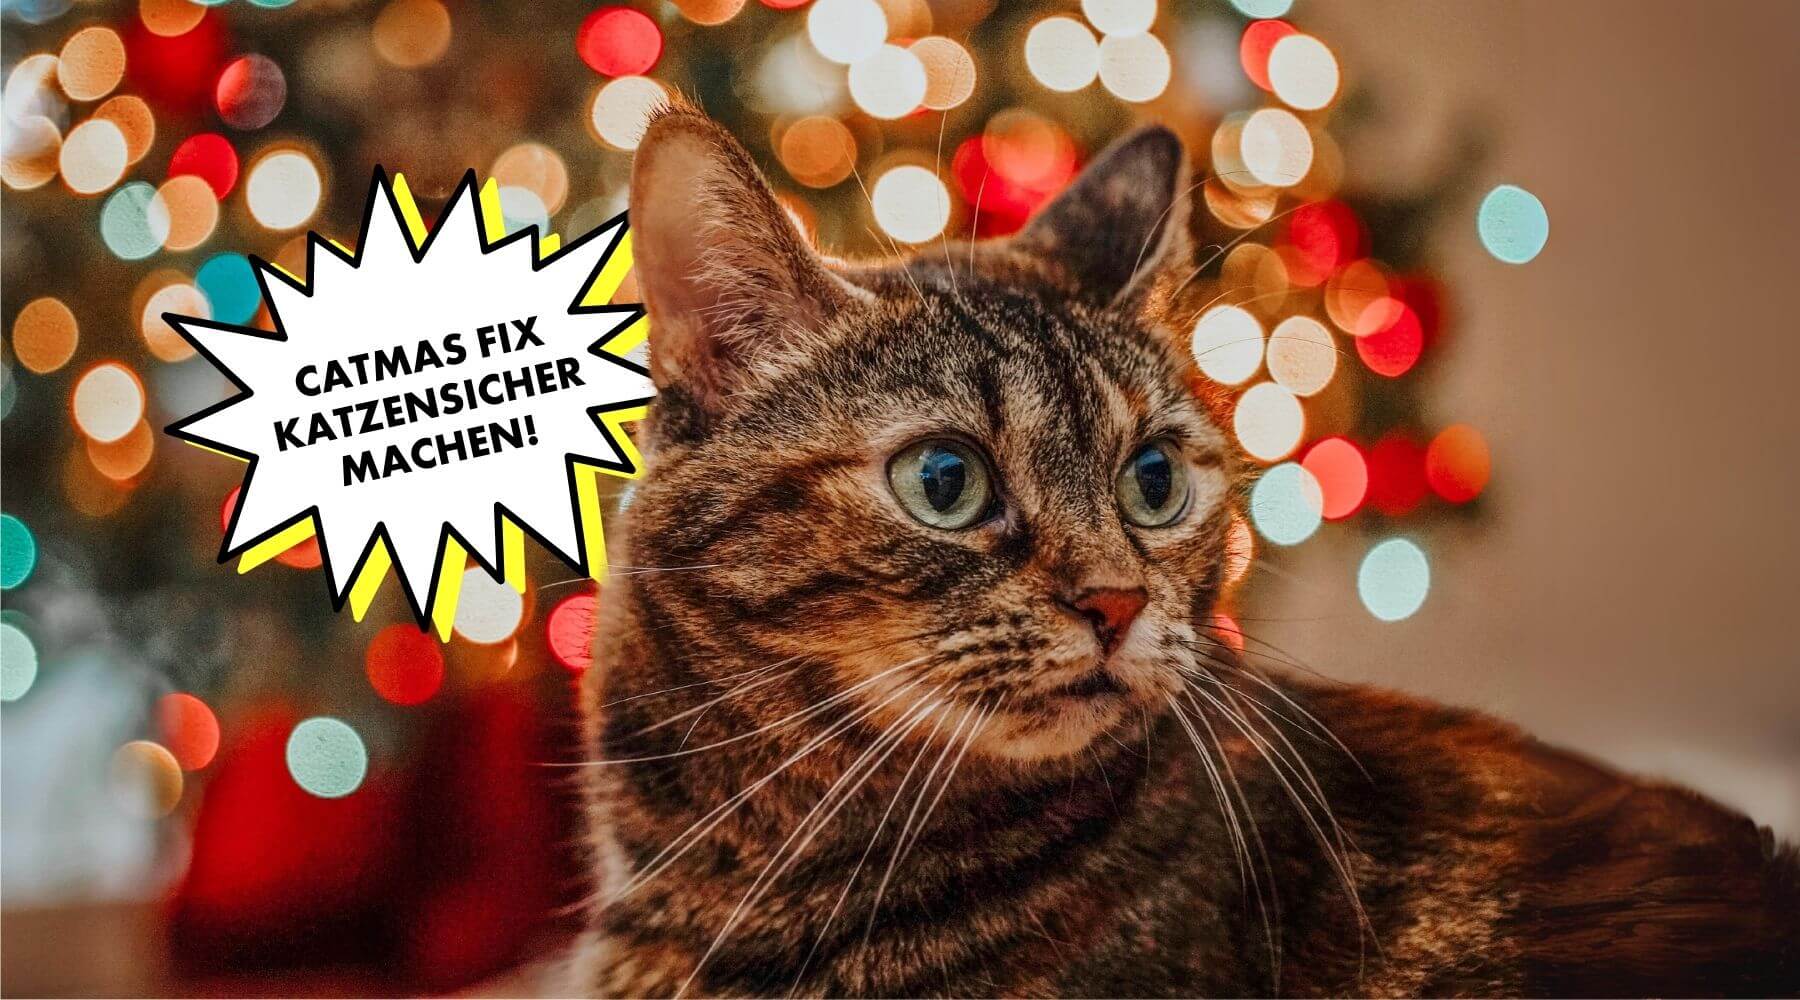 Weihnachten-mit-Katze-Weihnachtsbaum-geschmückt-katzensicher